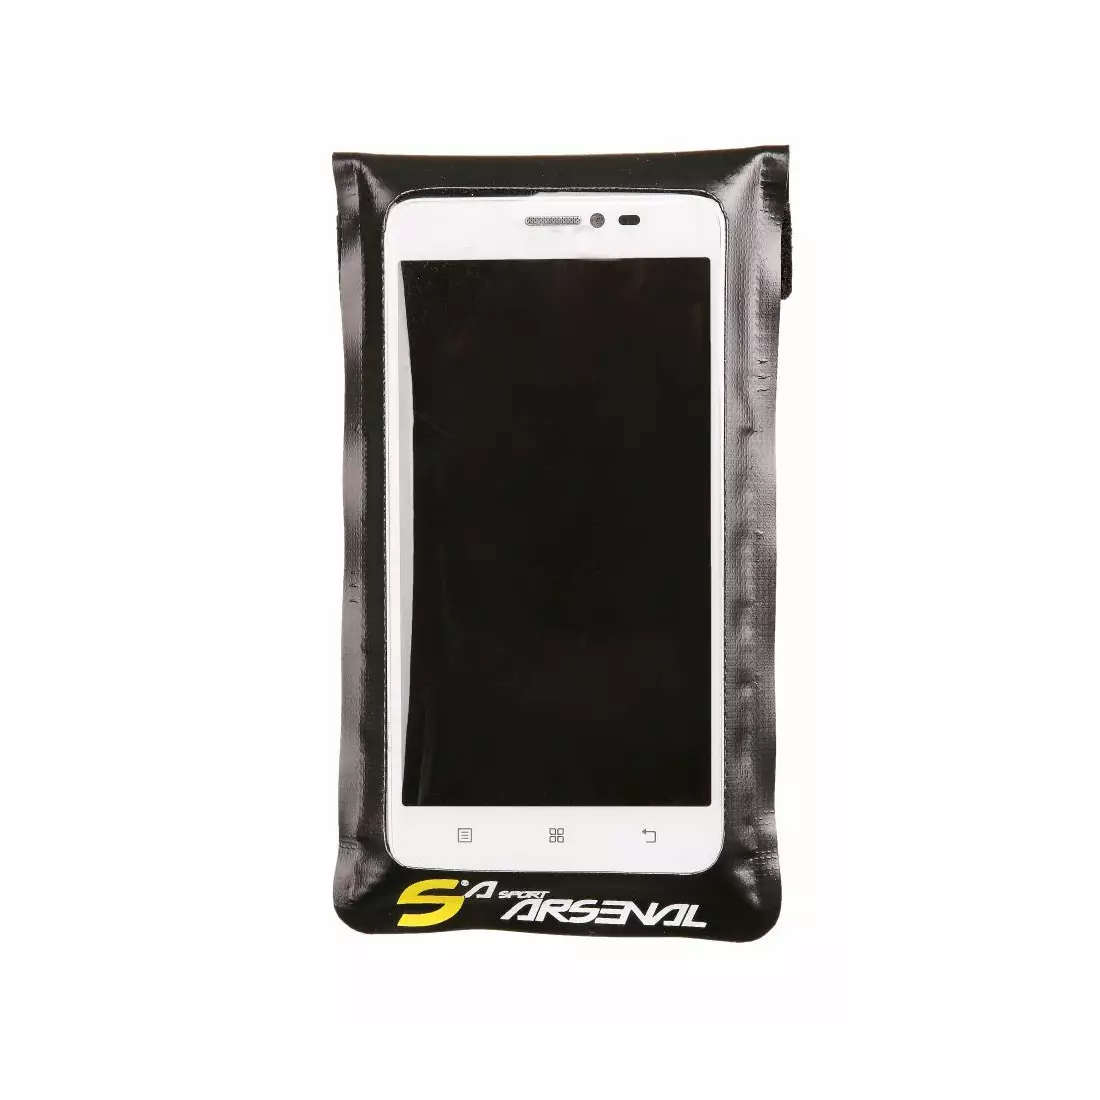 SPORT ARSENAL 532 Fahrradtasche für Smartphone, groß 5,5'-6,5'